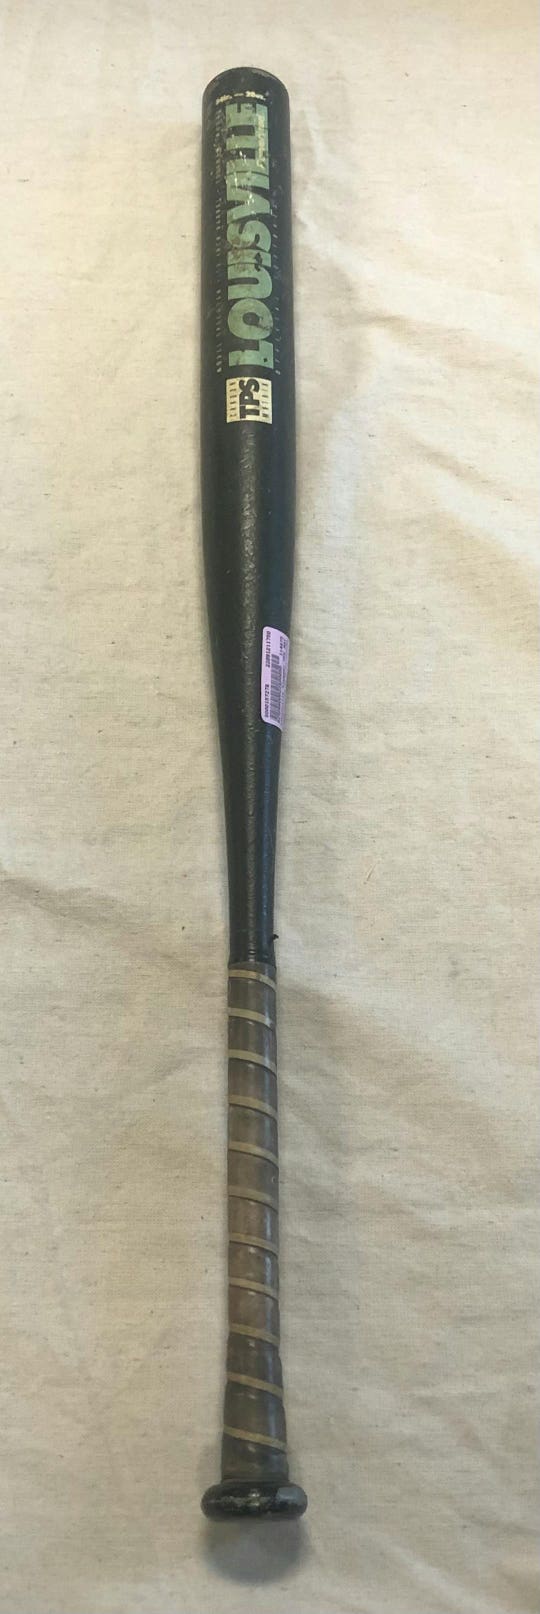 Used Louisville Slugger Tps Matrix Tpscm28m 34" -6 Drop Slowpitch Bats